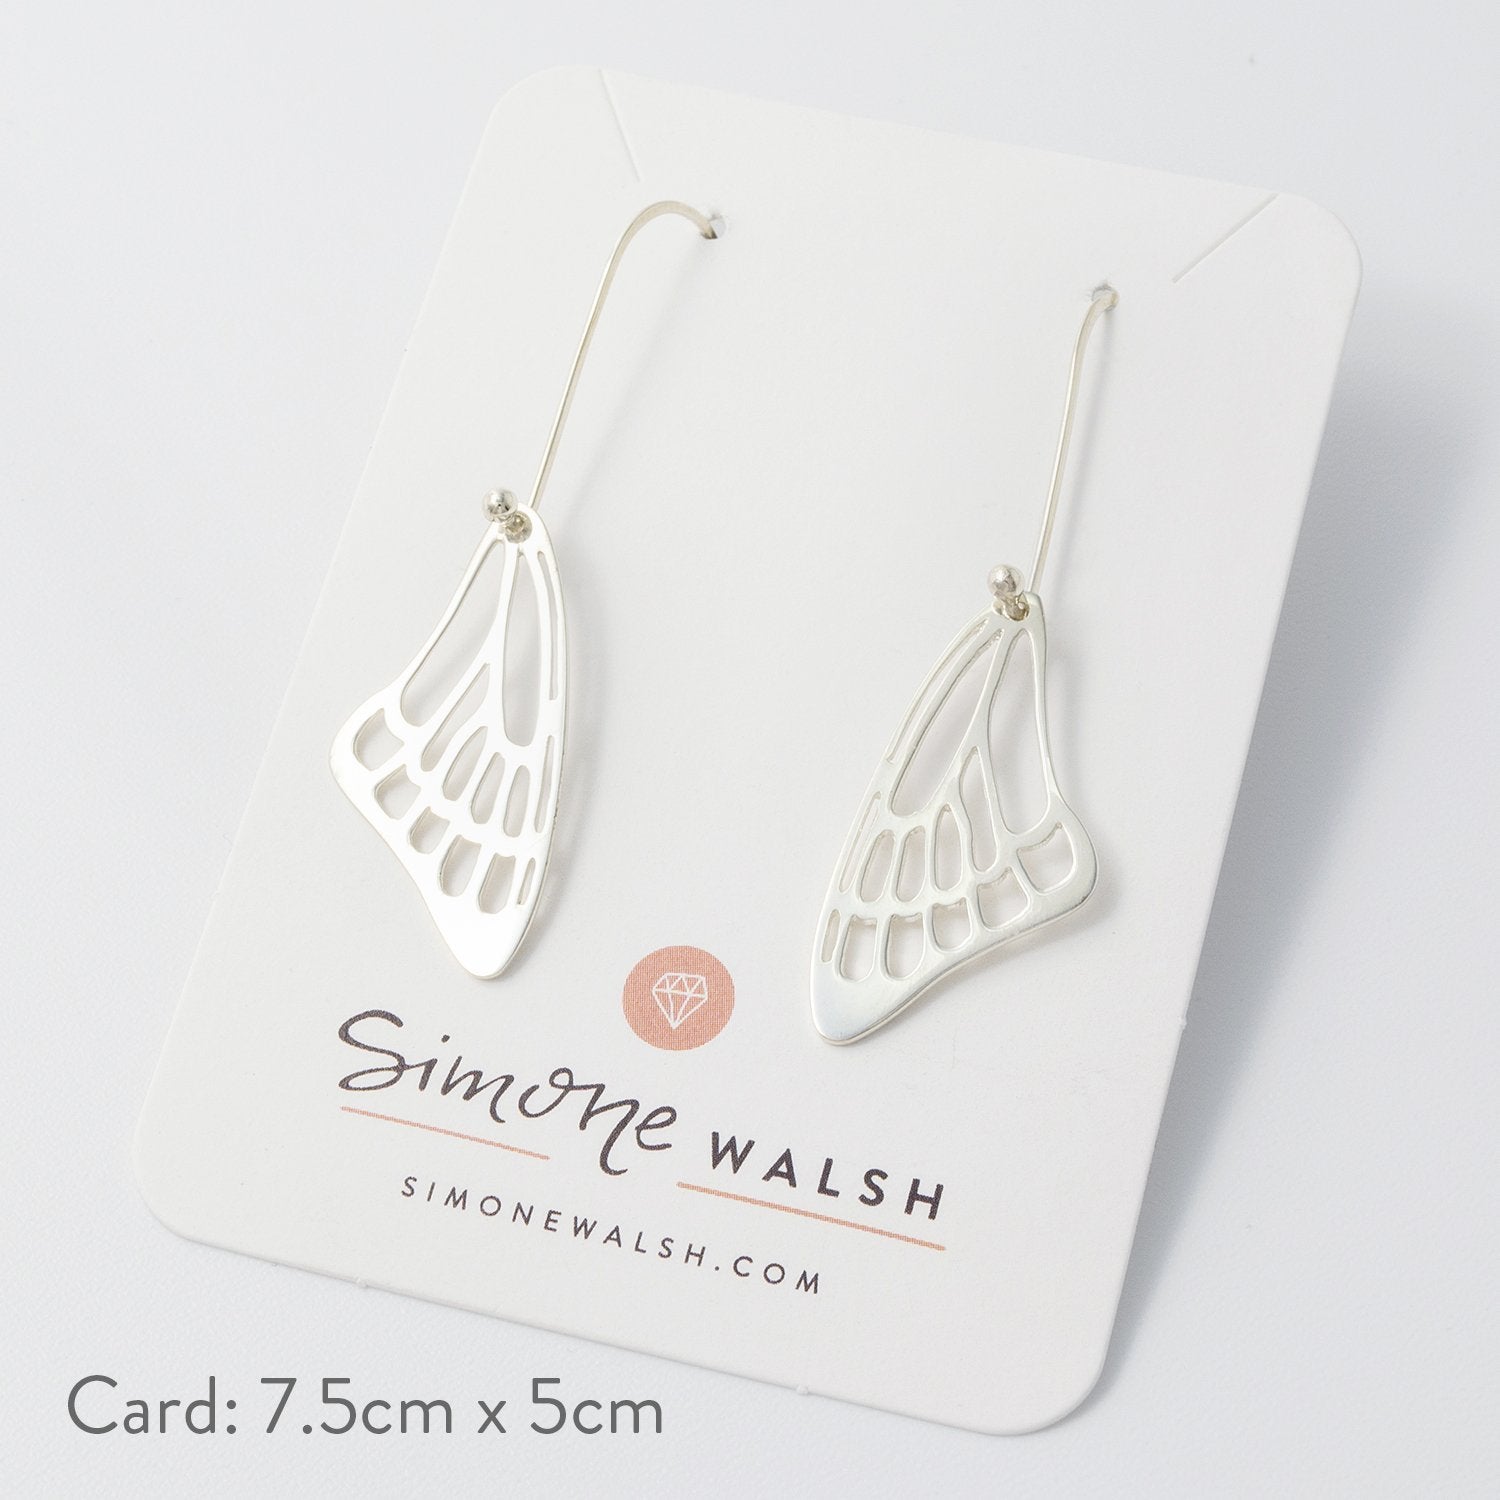 Butterfly wing silver earrings - Simone Walsh Jewellery Australia